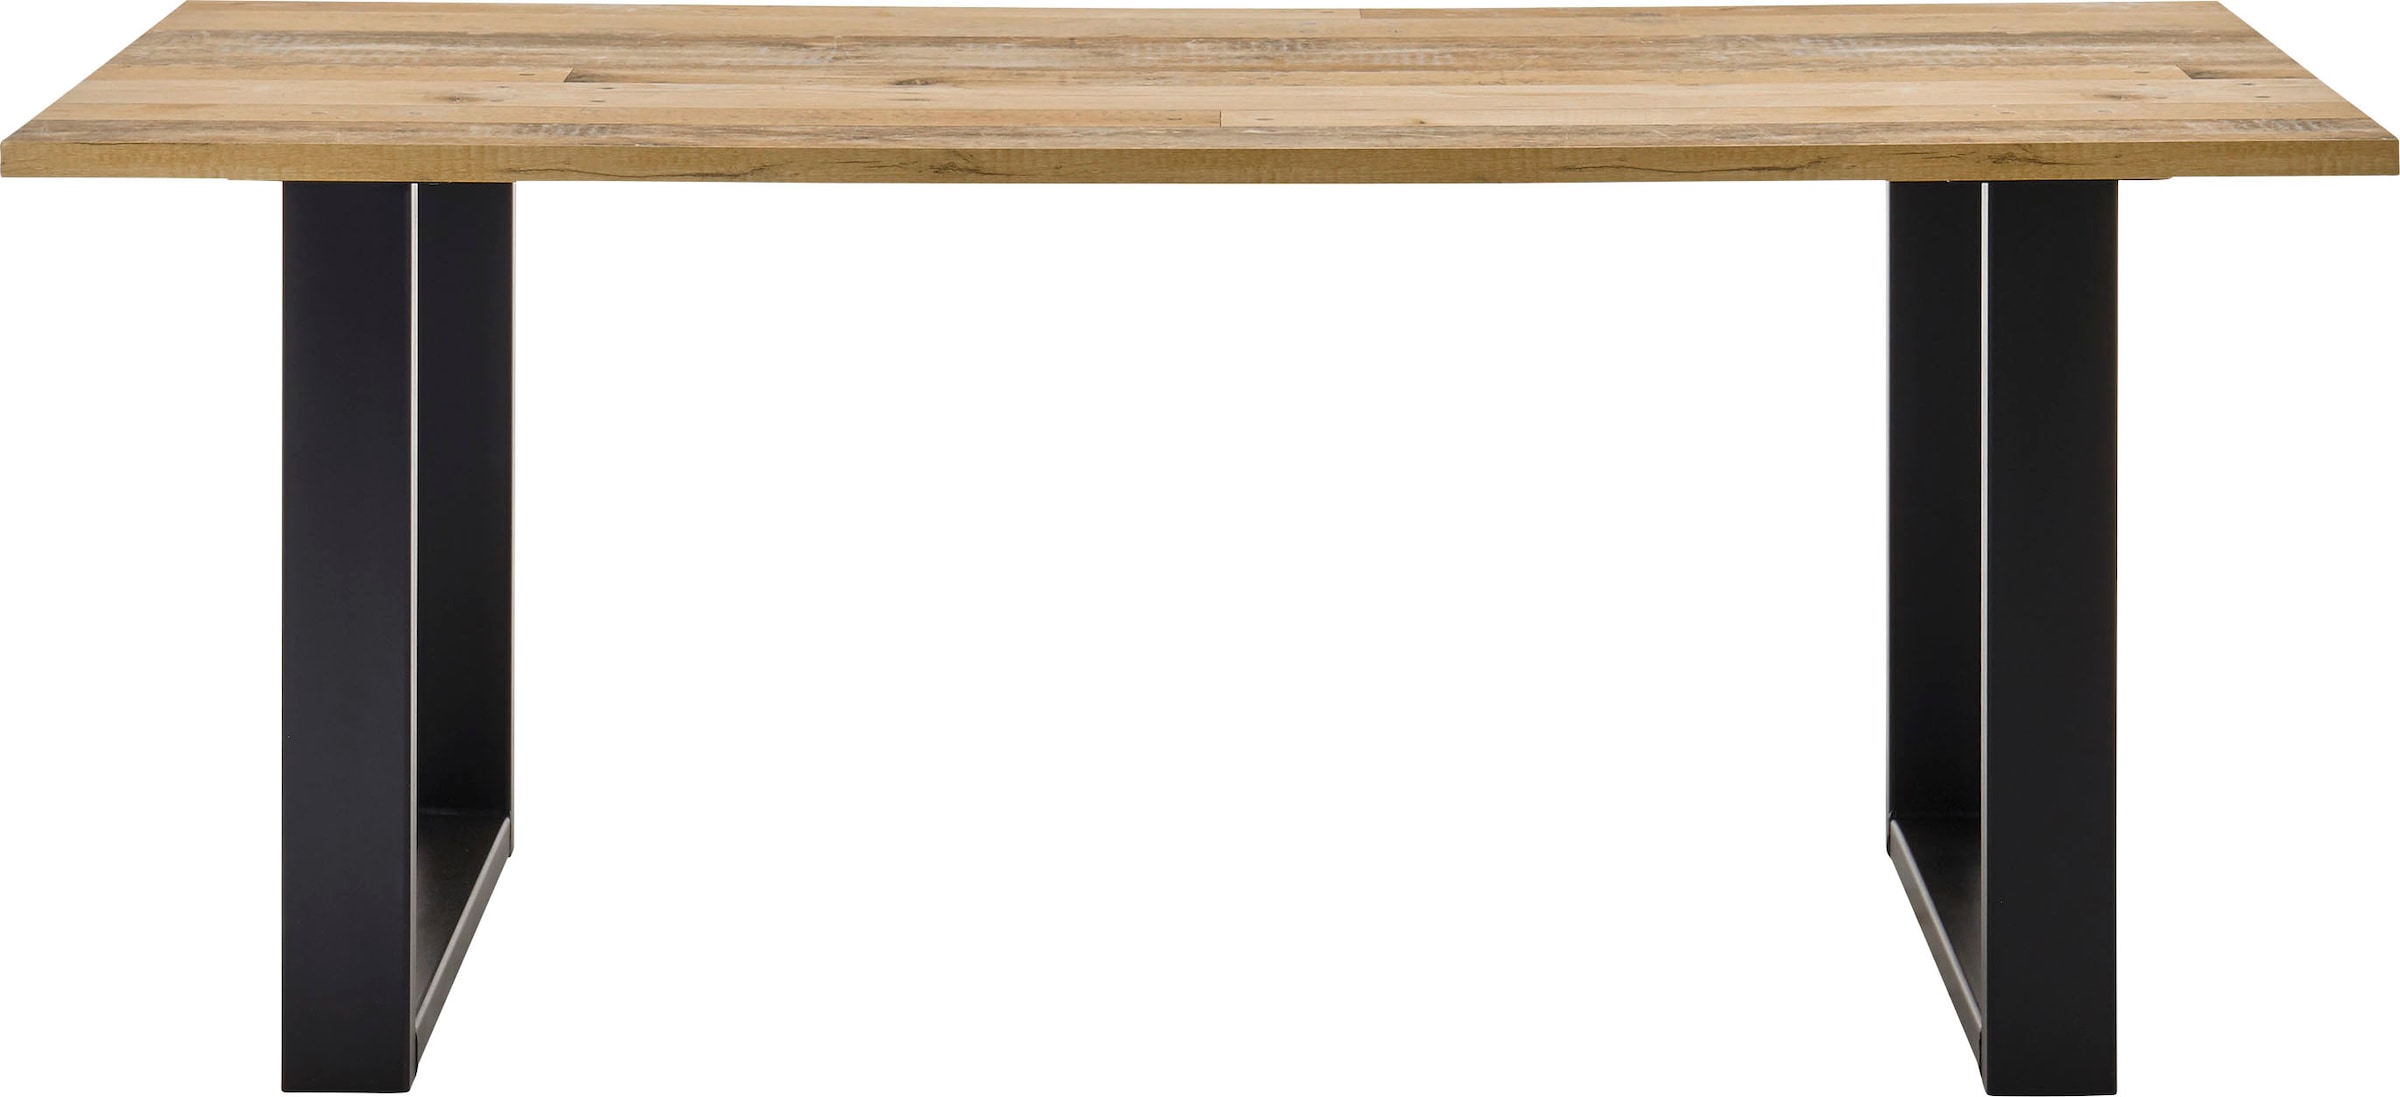 Home affaire Esstisch »SHERWOOD«, in modernem Holz Dekor, Breite 180 cm